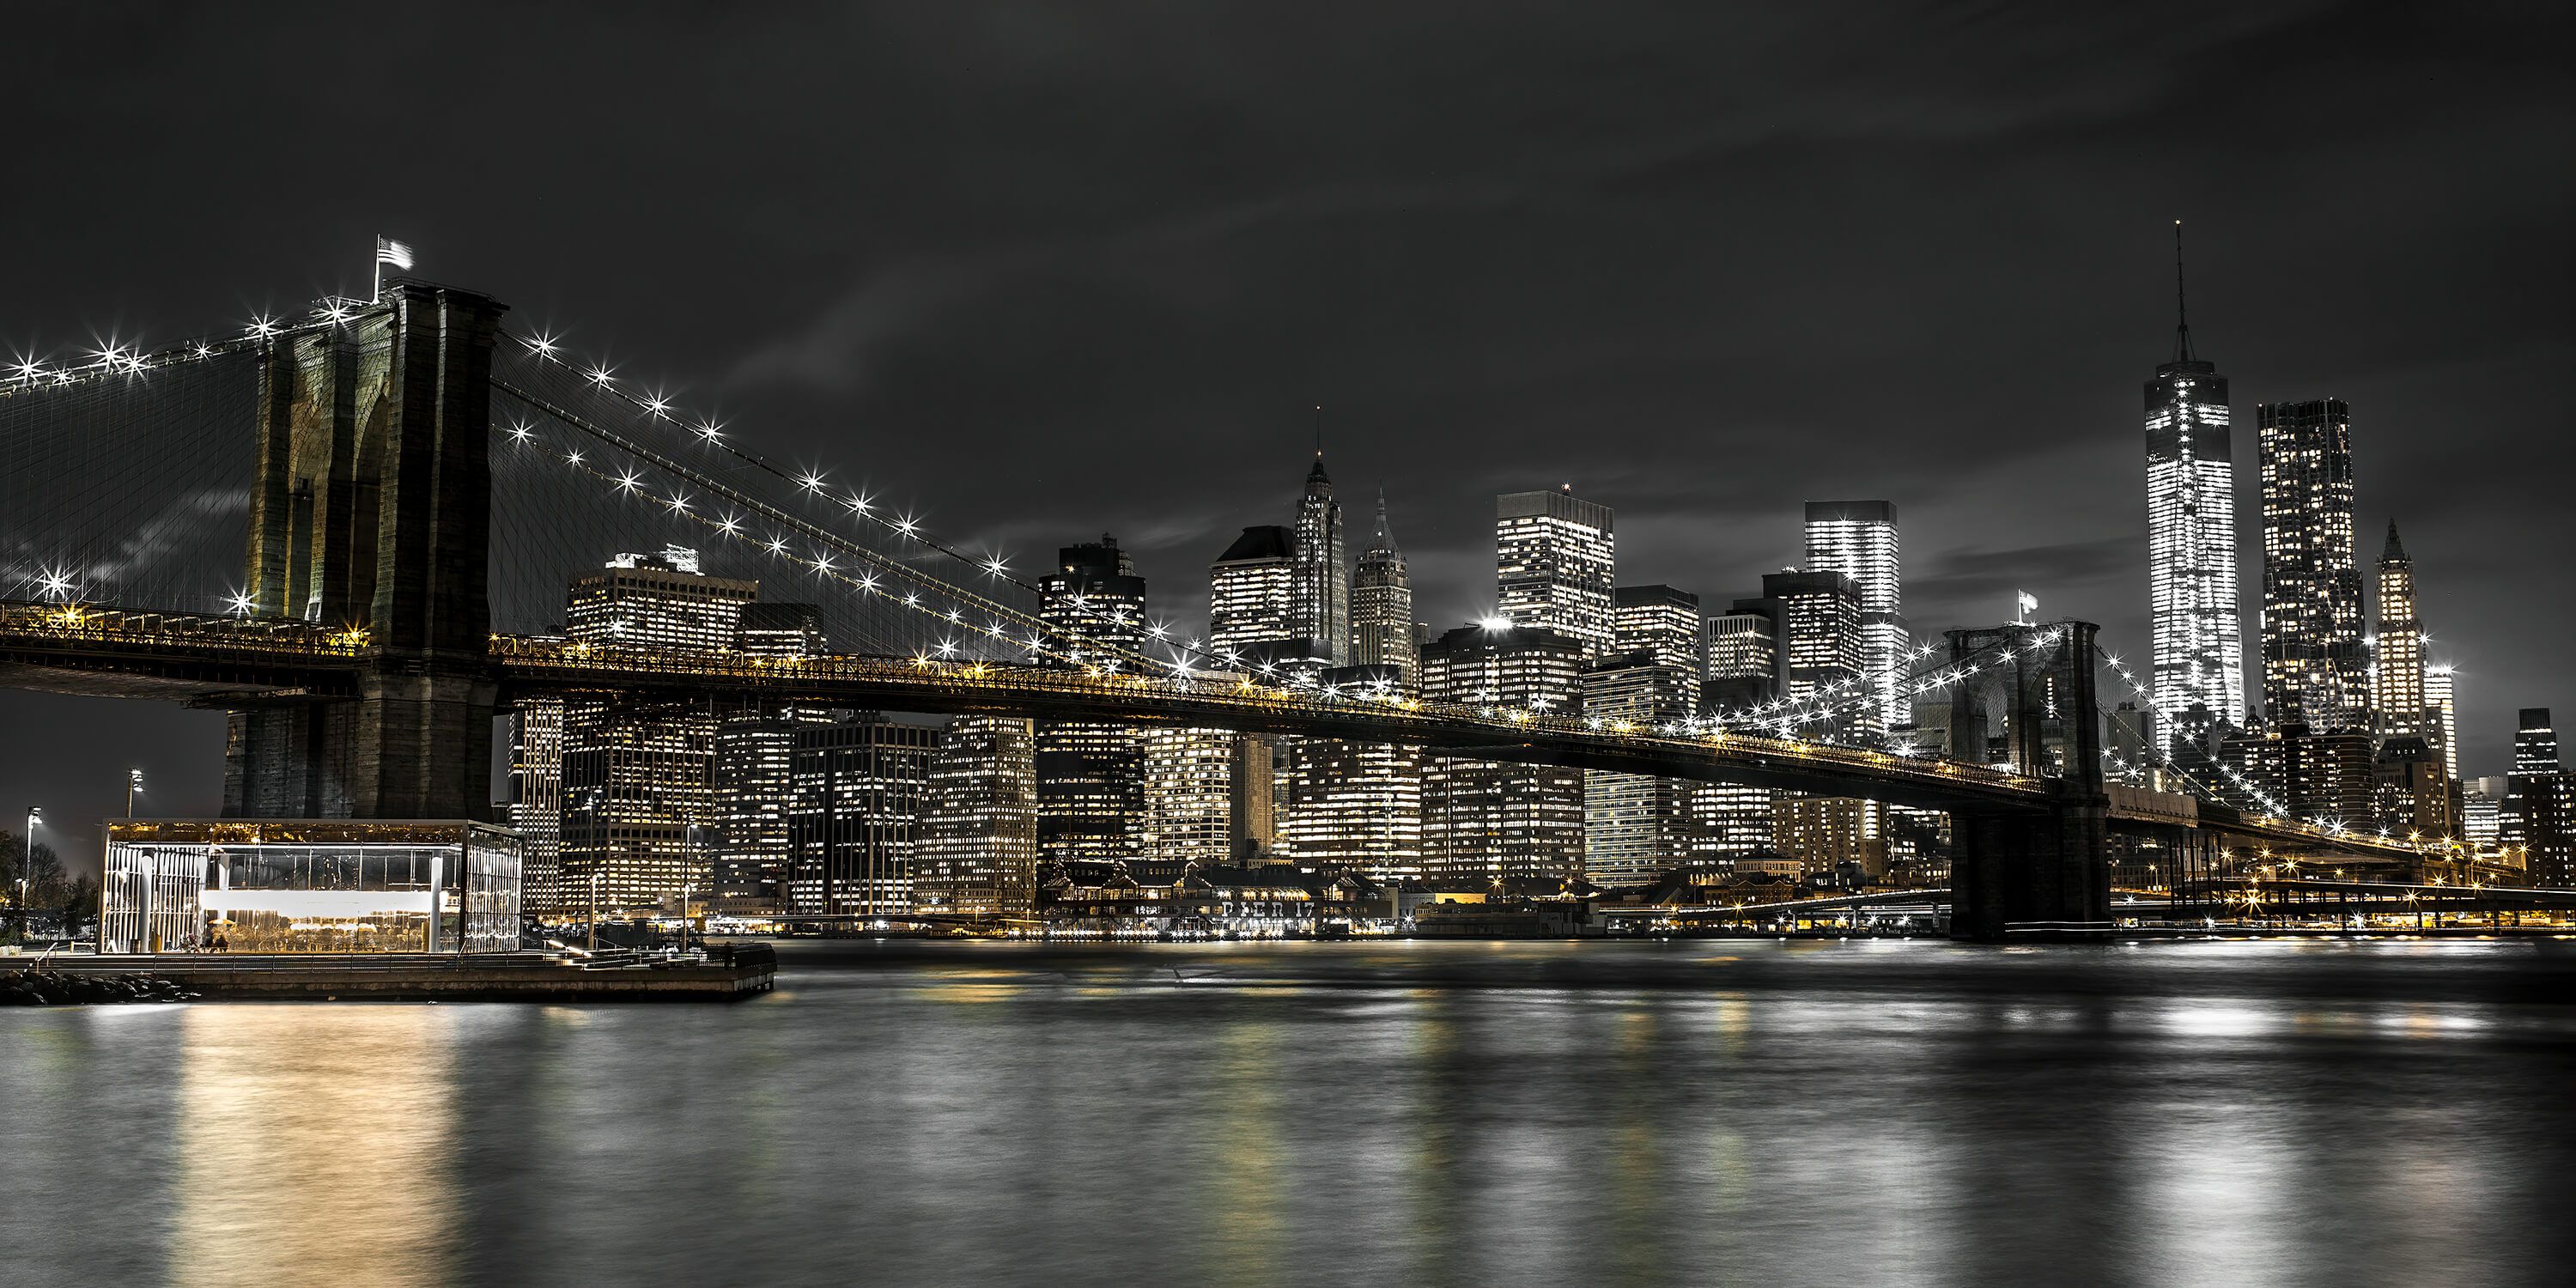  Le pont de Brooklyn la nuit